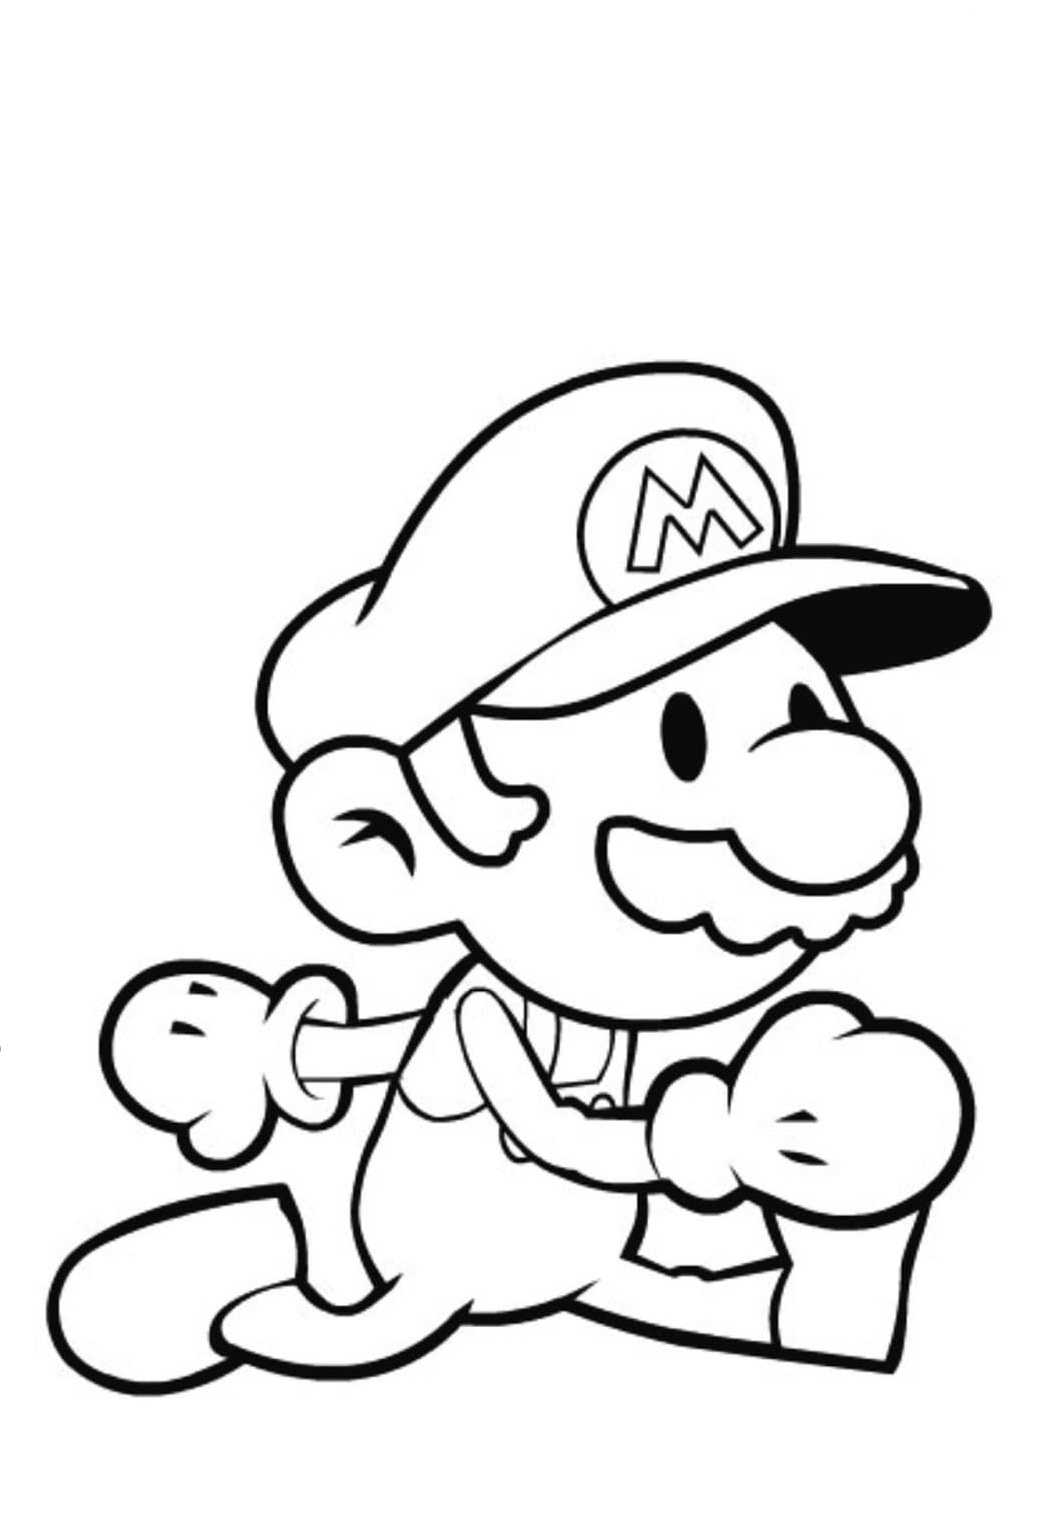 Dibujos De Mario Bros Para Colorear E83